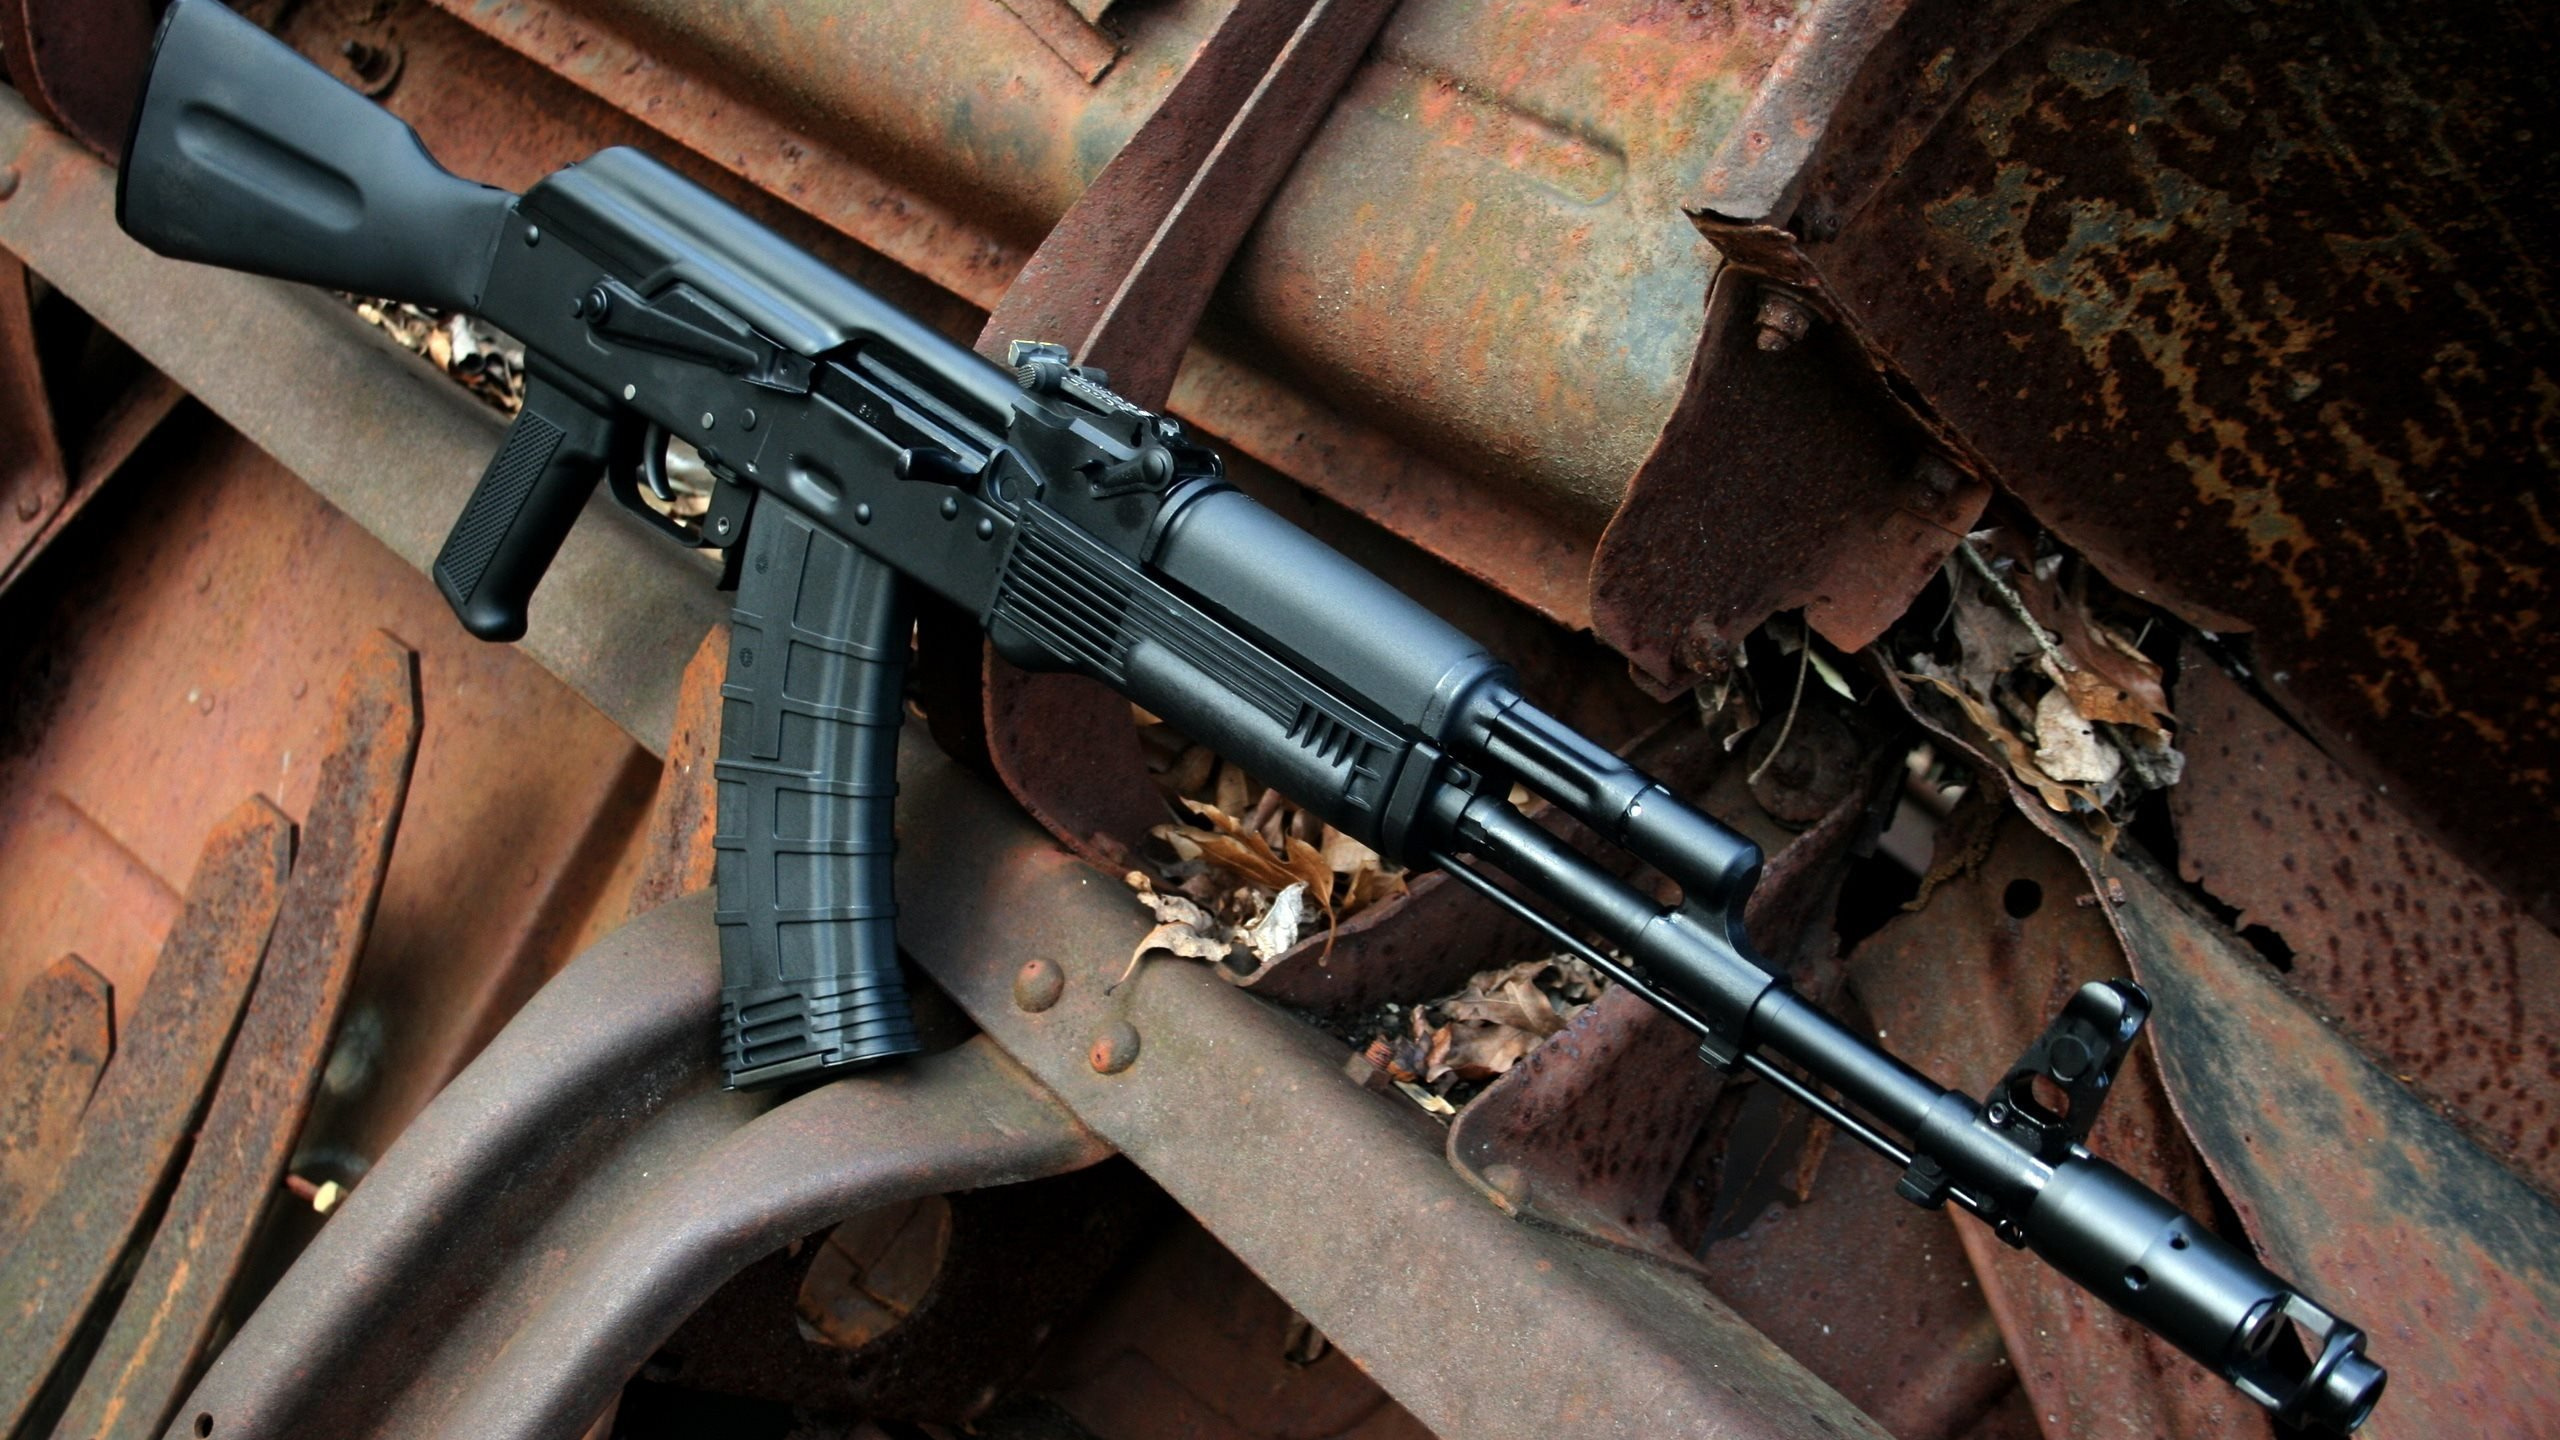 Ak-74, Arma, Rifle, Gatillo, Pistola de Aire. Wallpaper in 2560x1440 Resolution